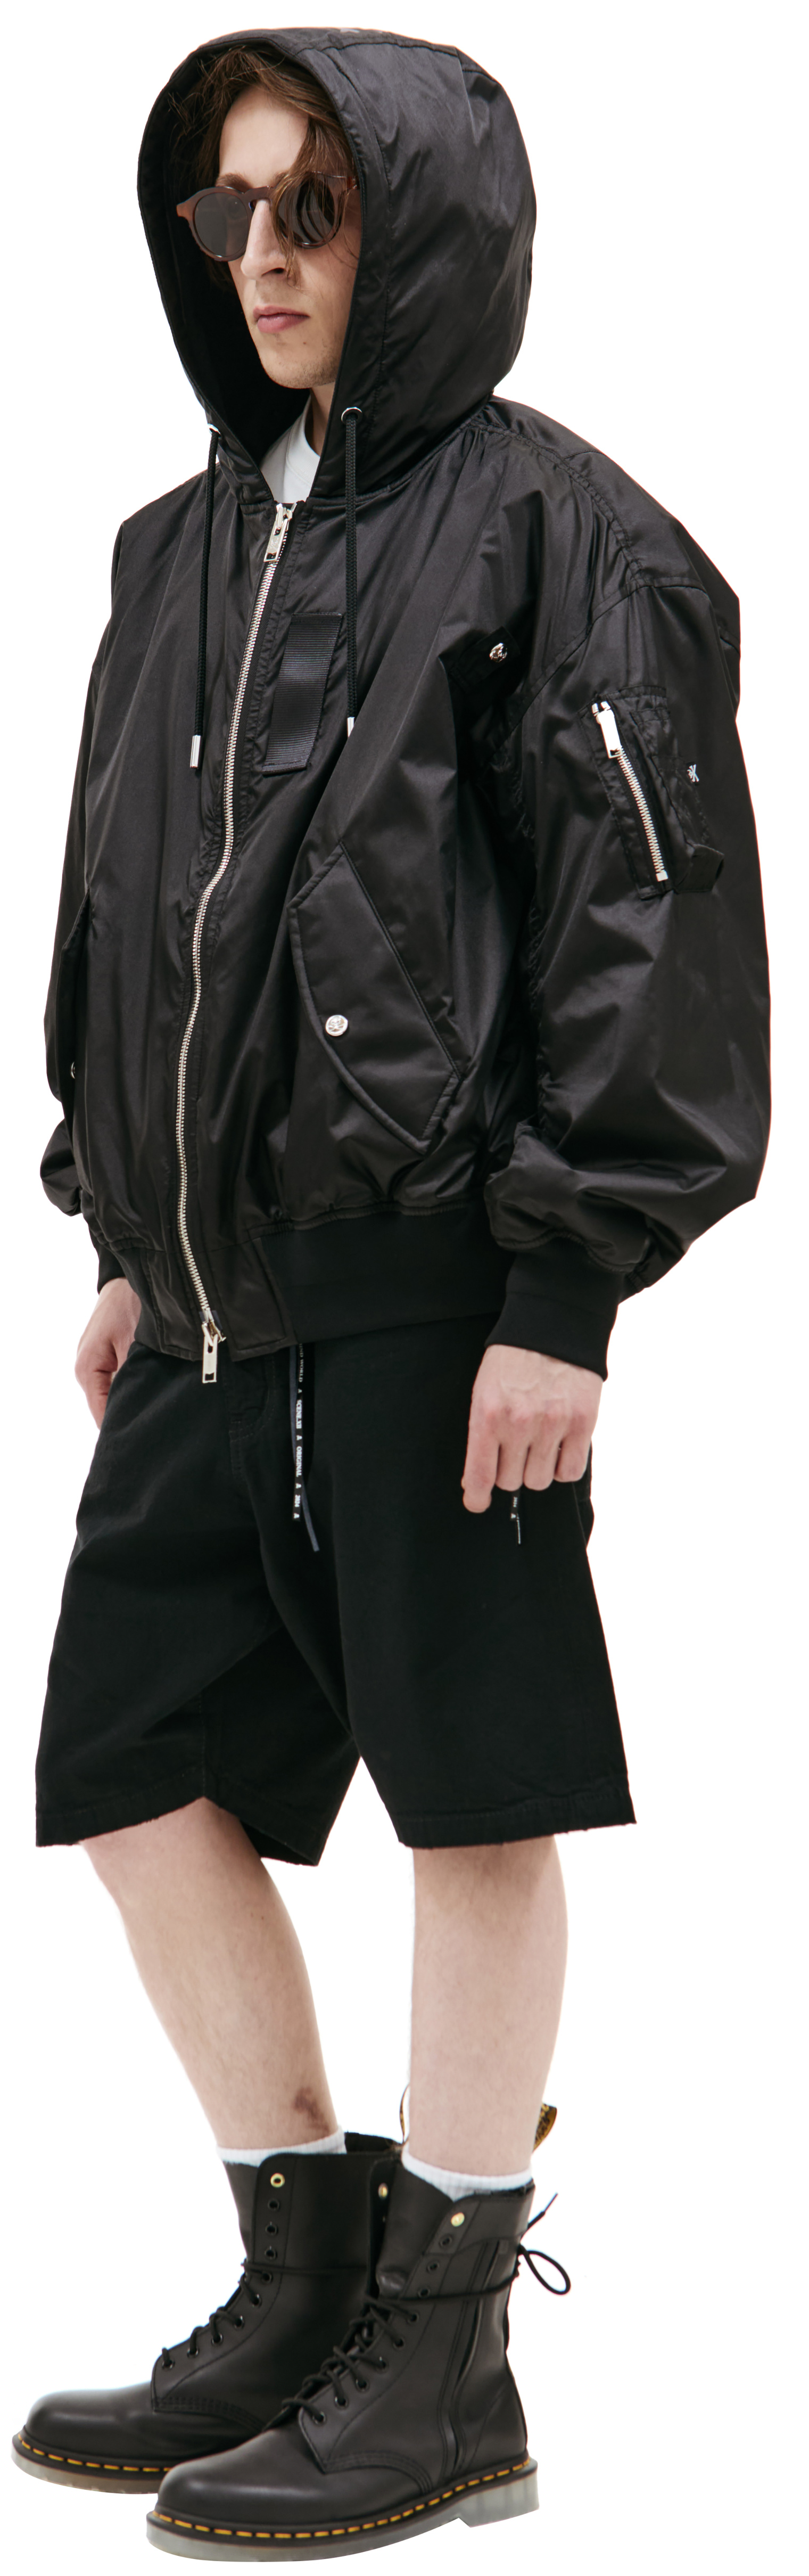 Mastermind WORLD Black hooded jacket